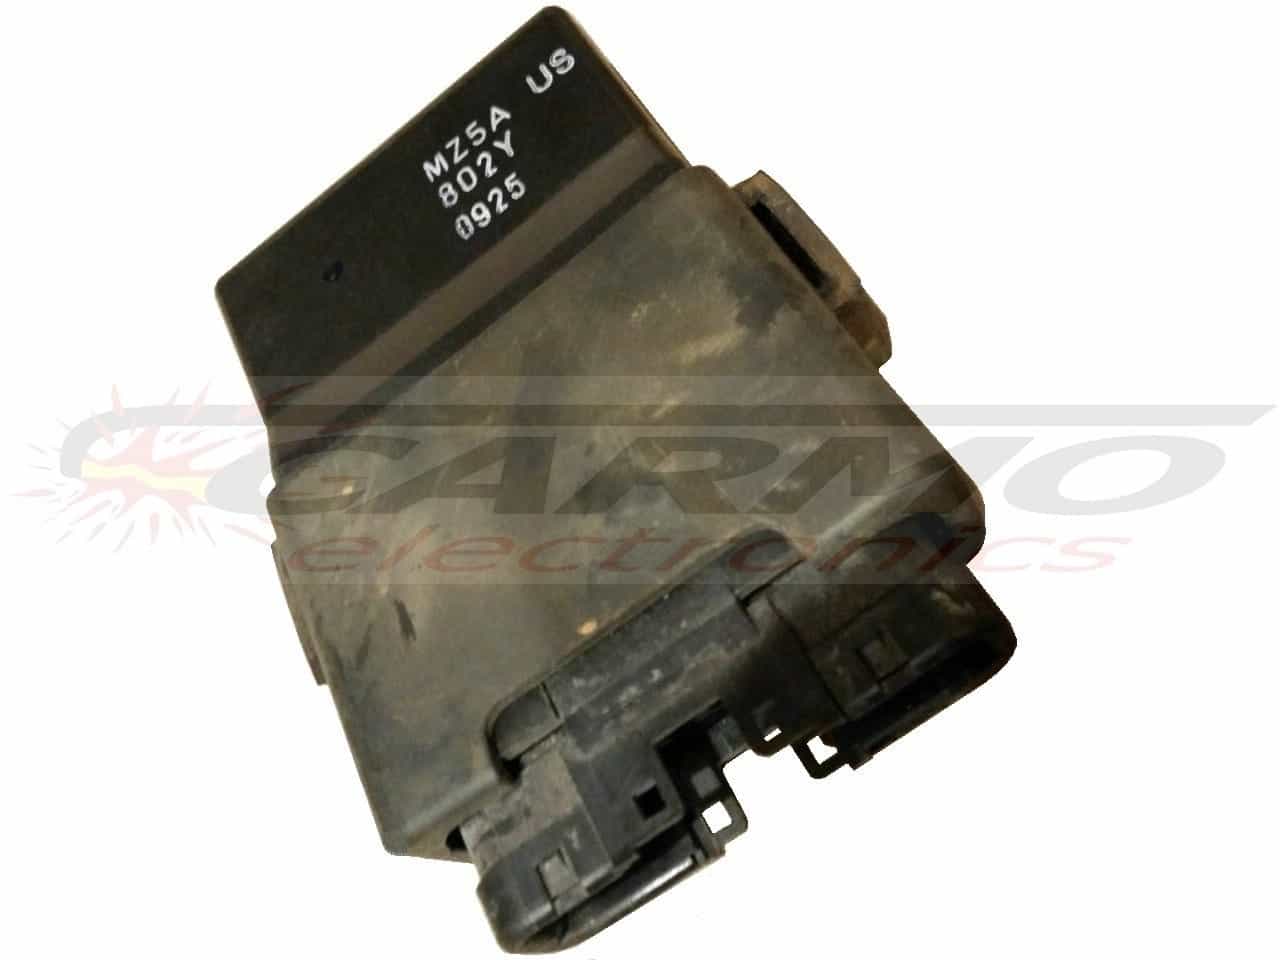 VFR750 TCI CDI dispositif de commande boîte noire (MZ5A, 802Y)